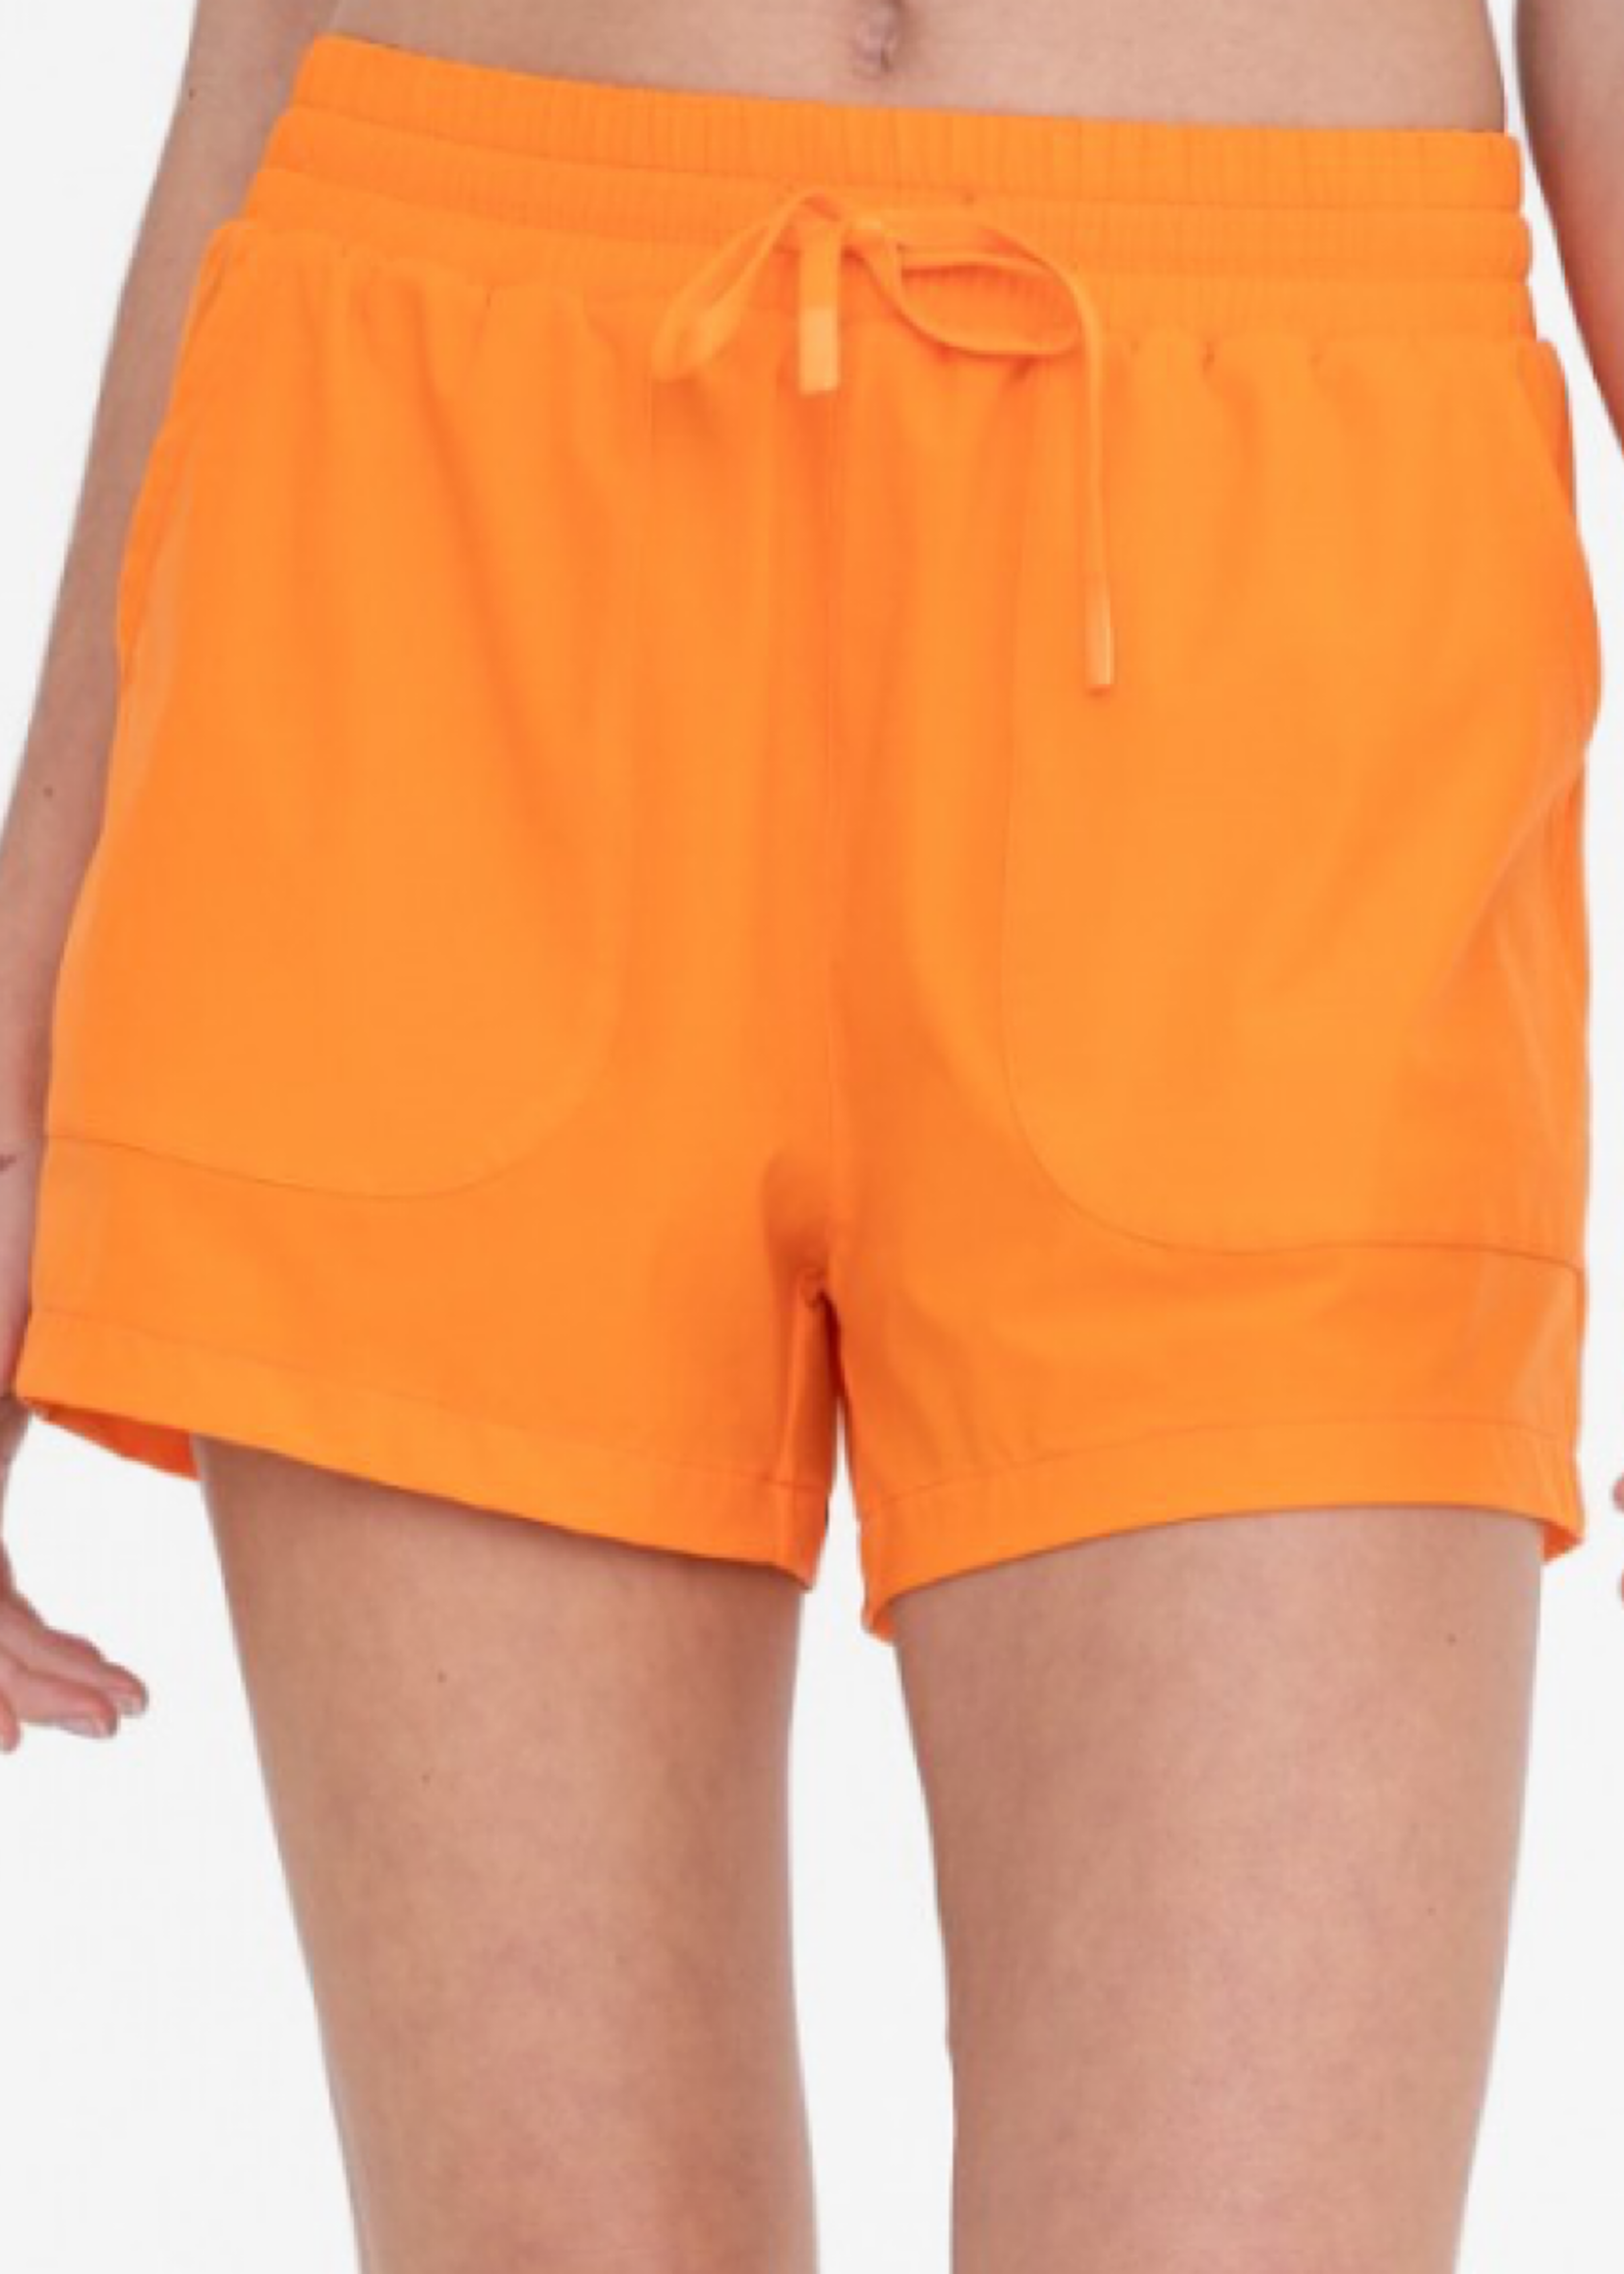 Orange Athleisure Shorts with Drawstring